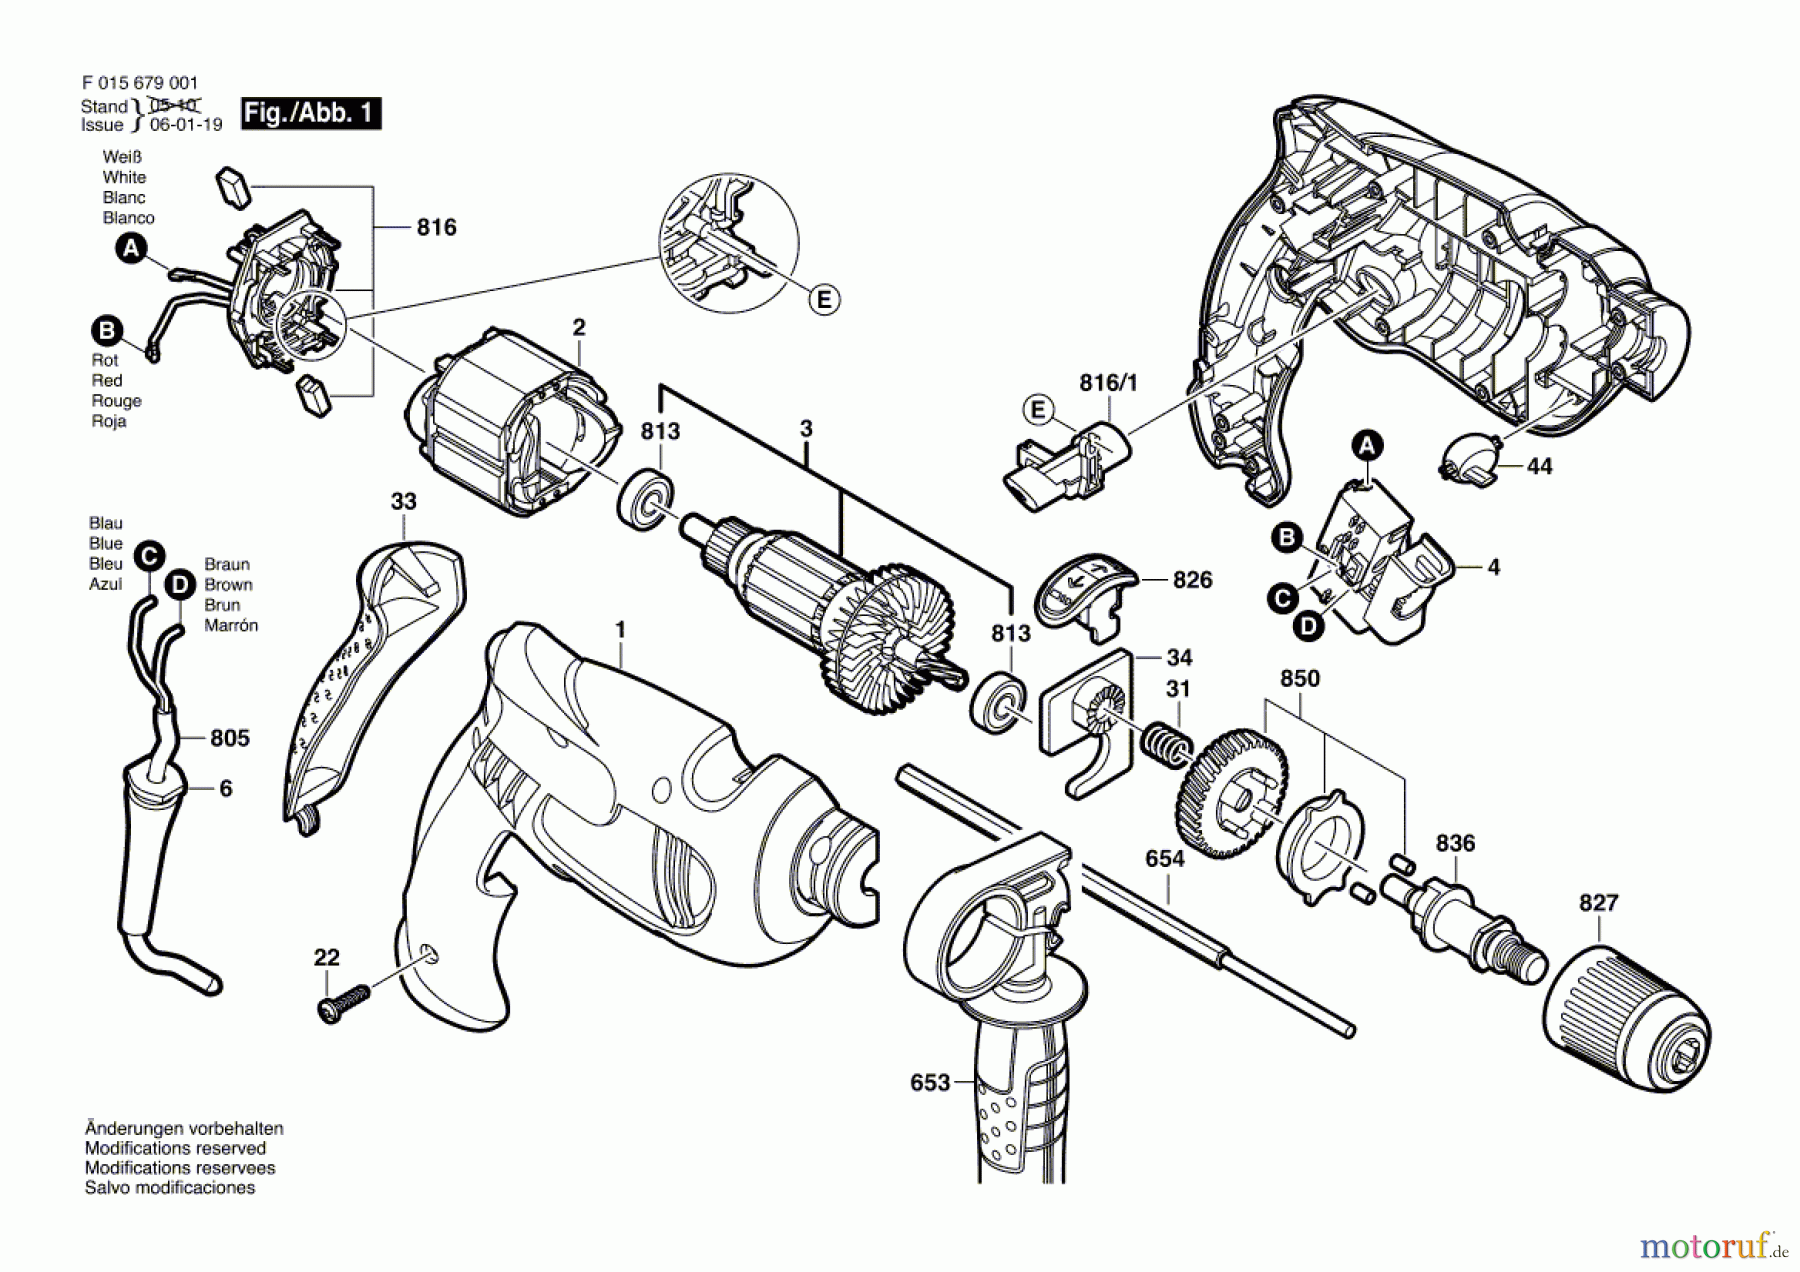  Bosch Werkzeug Schlagbohrmaschine 6790 Seite 1